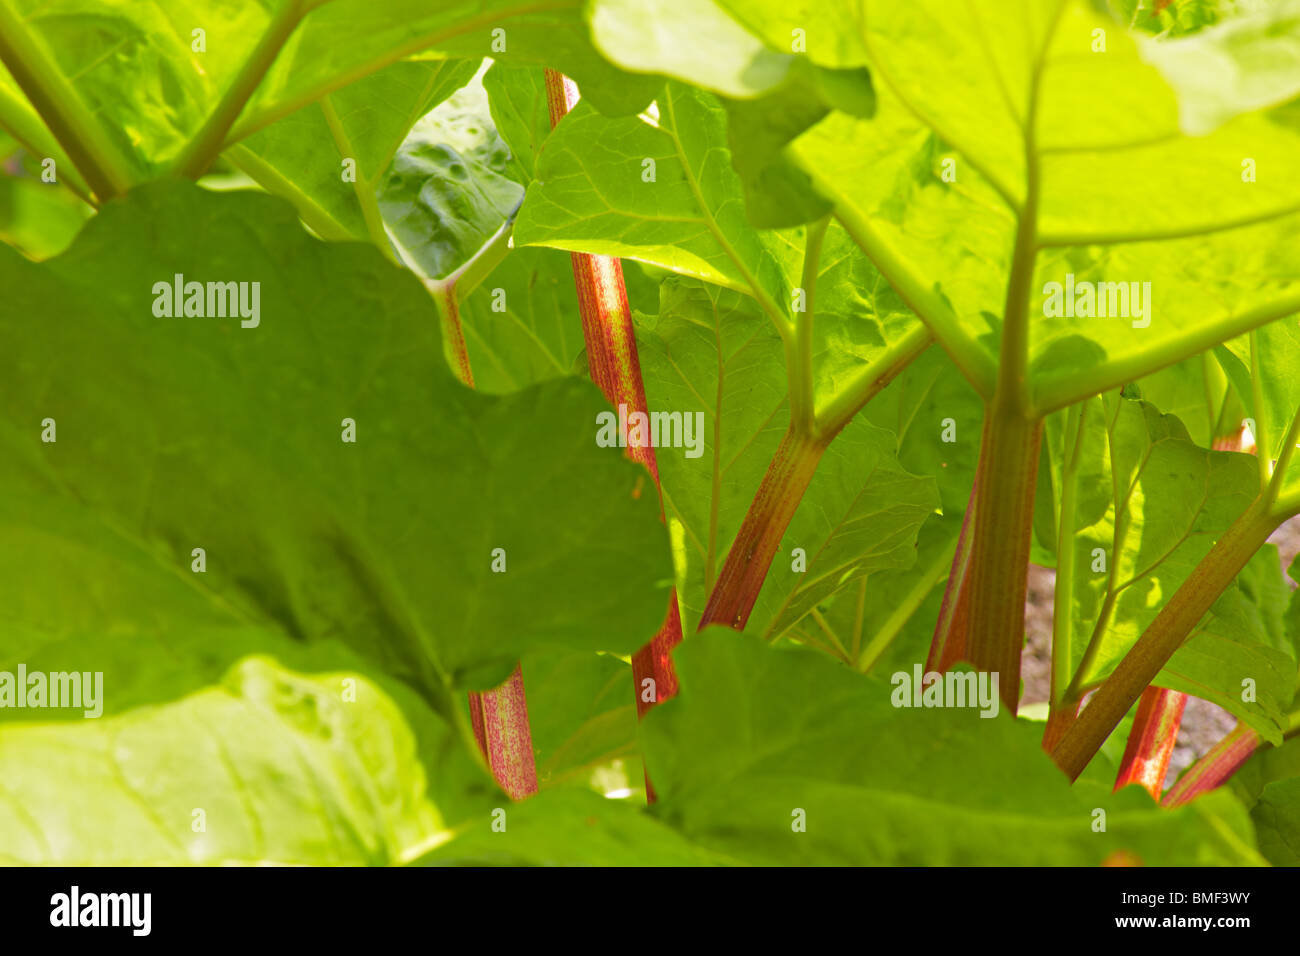 Organic Rhubarb in the garden Stock Photo